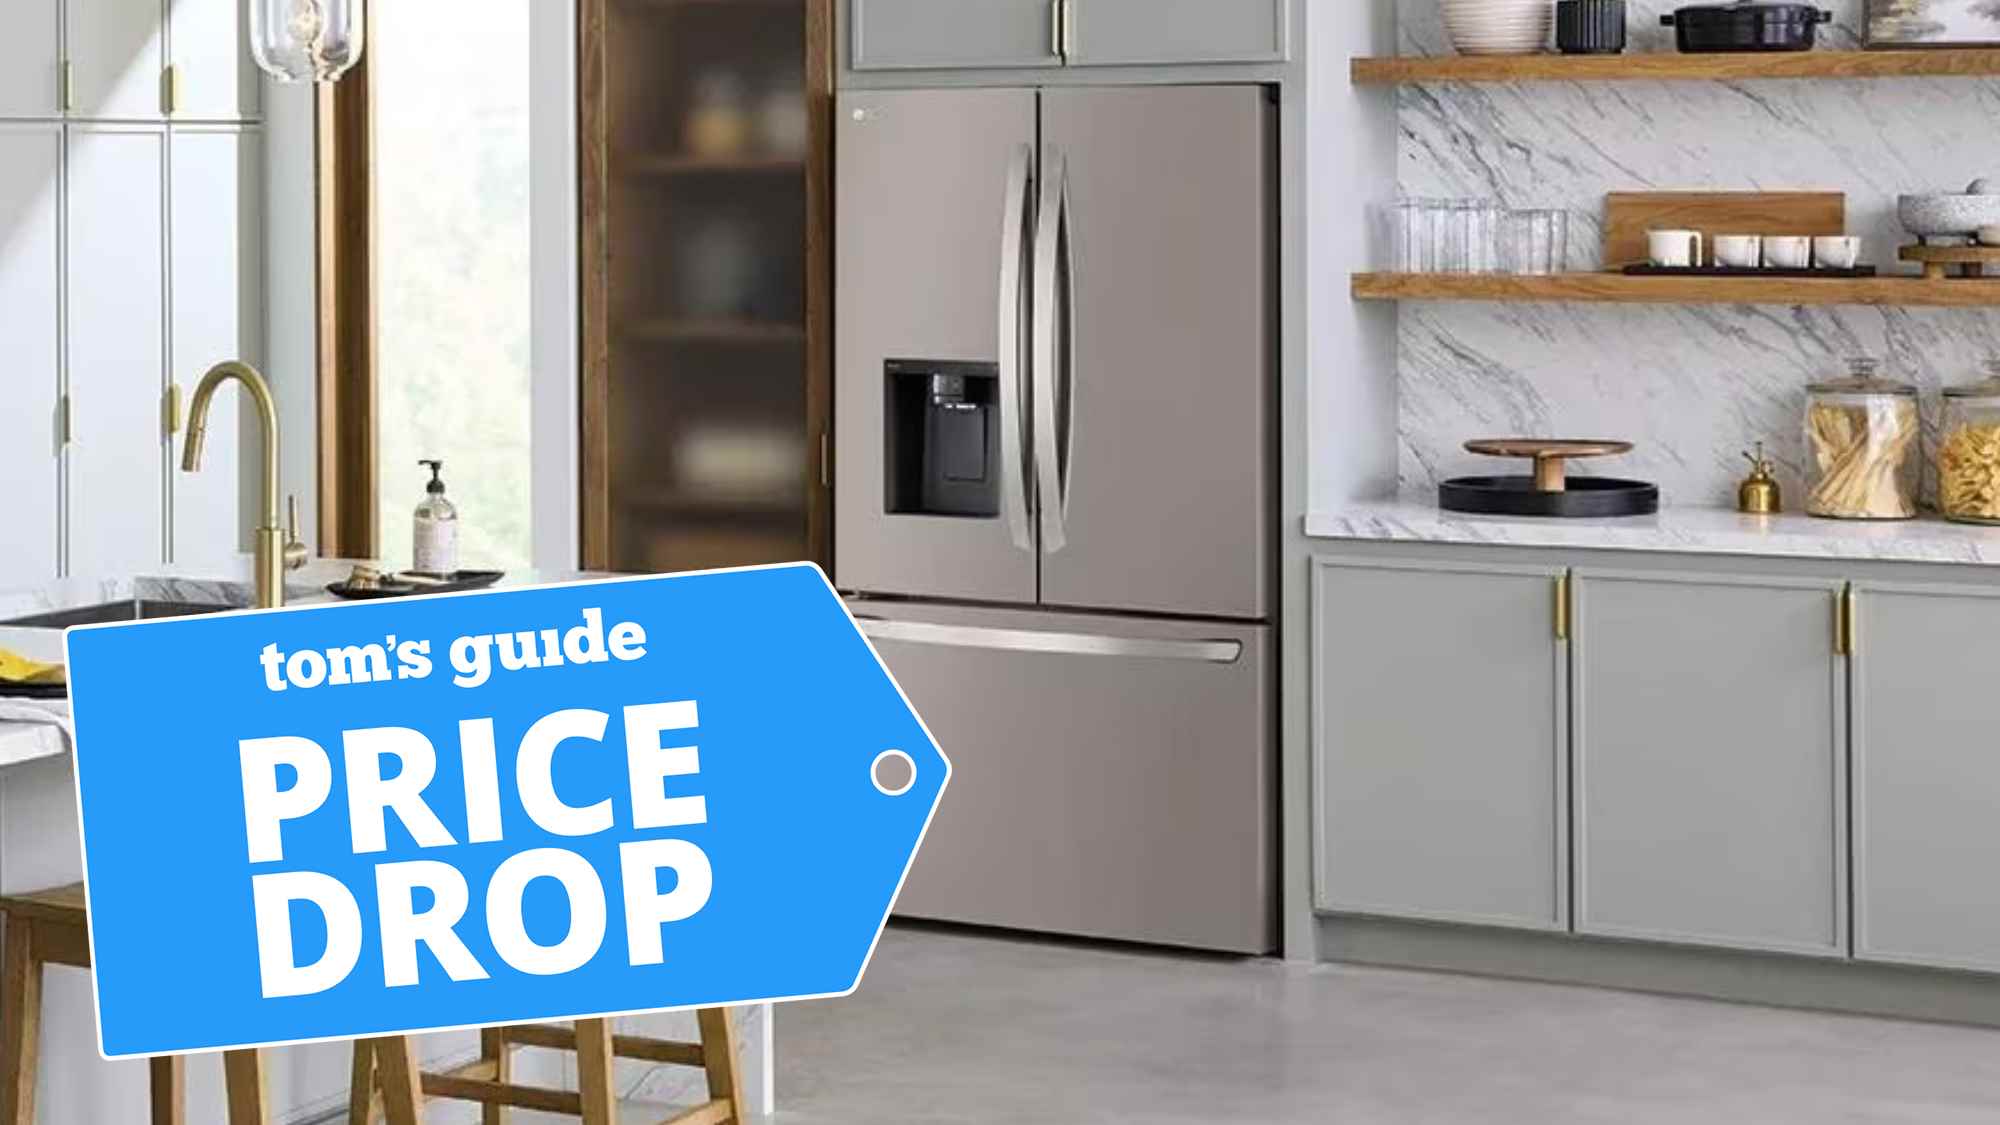 Mutfakta gösterilen LG buzdolabı